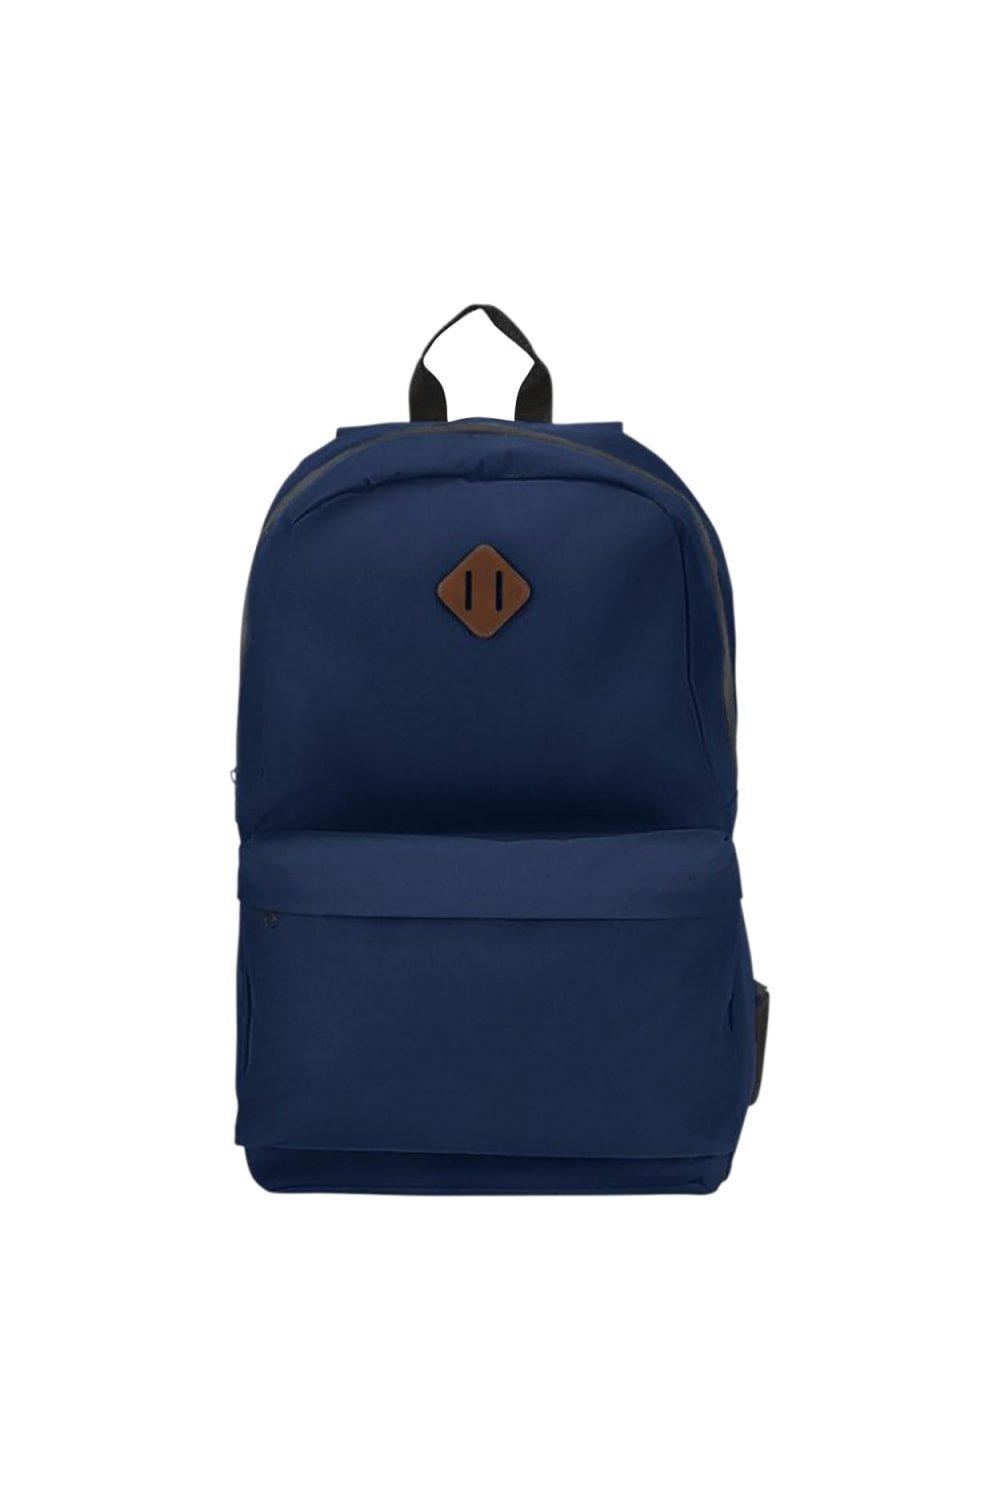 Рюкзак для ноутбука Stratta Bullet, темно-синий